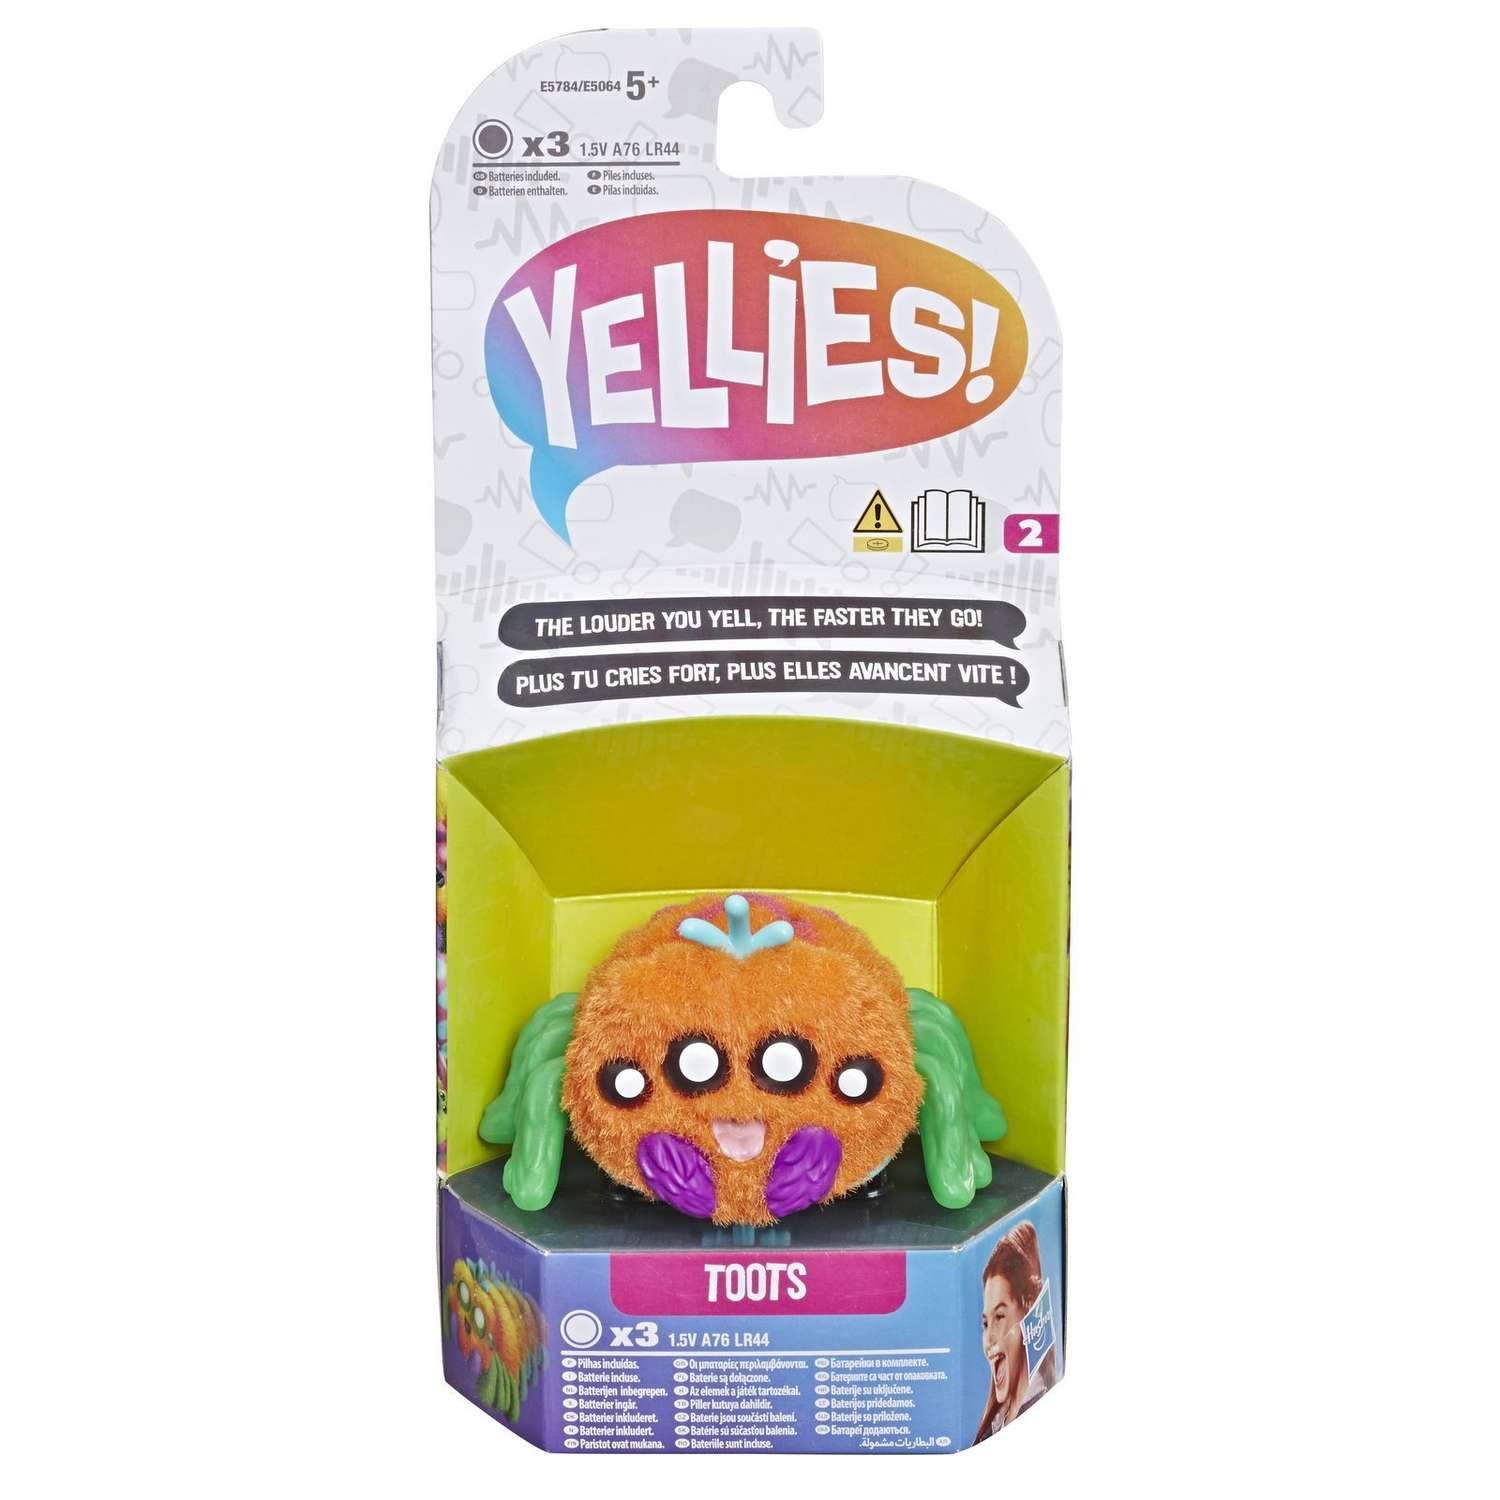 Игрушка Yellies (Yellies) Паучок Тутс E5784EU4 - фото 2